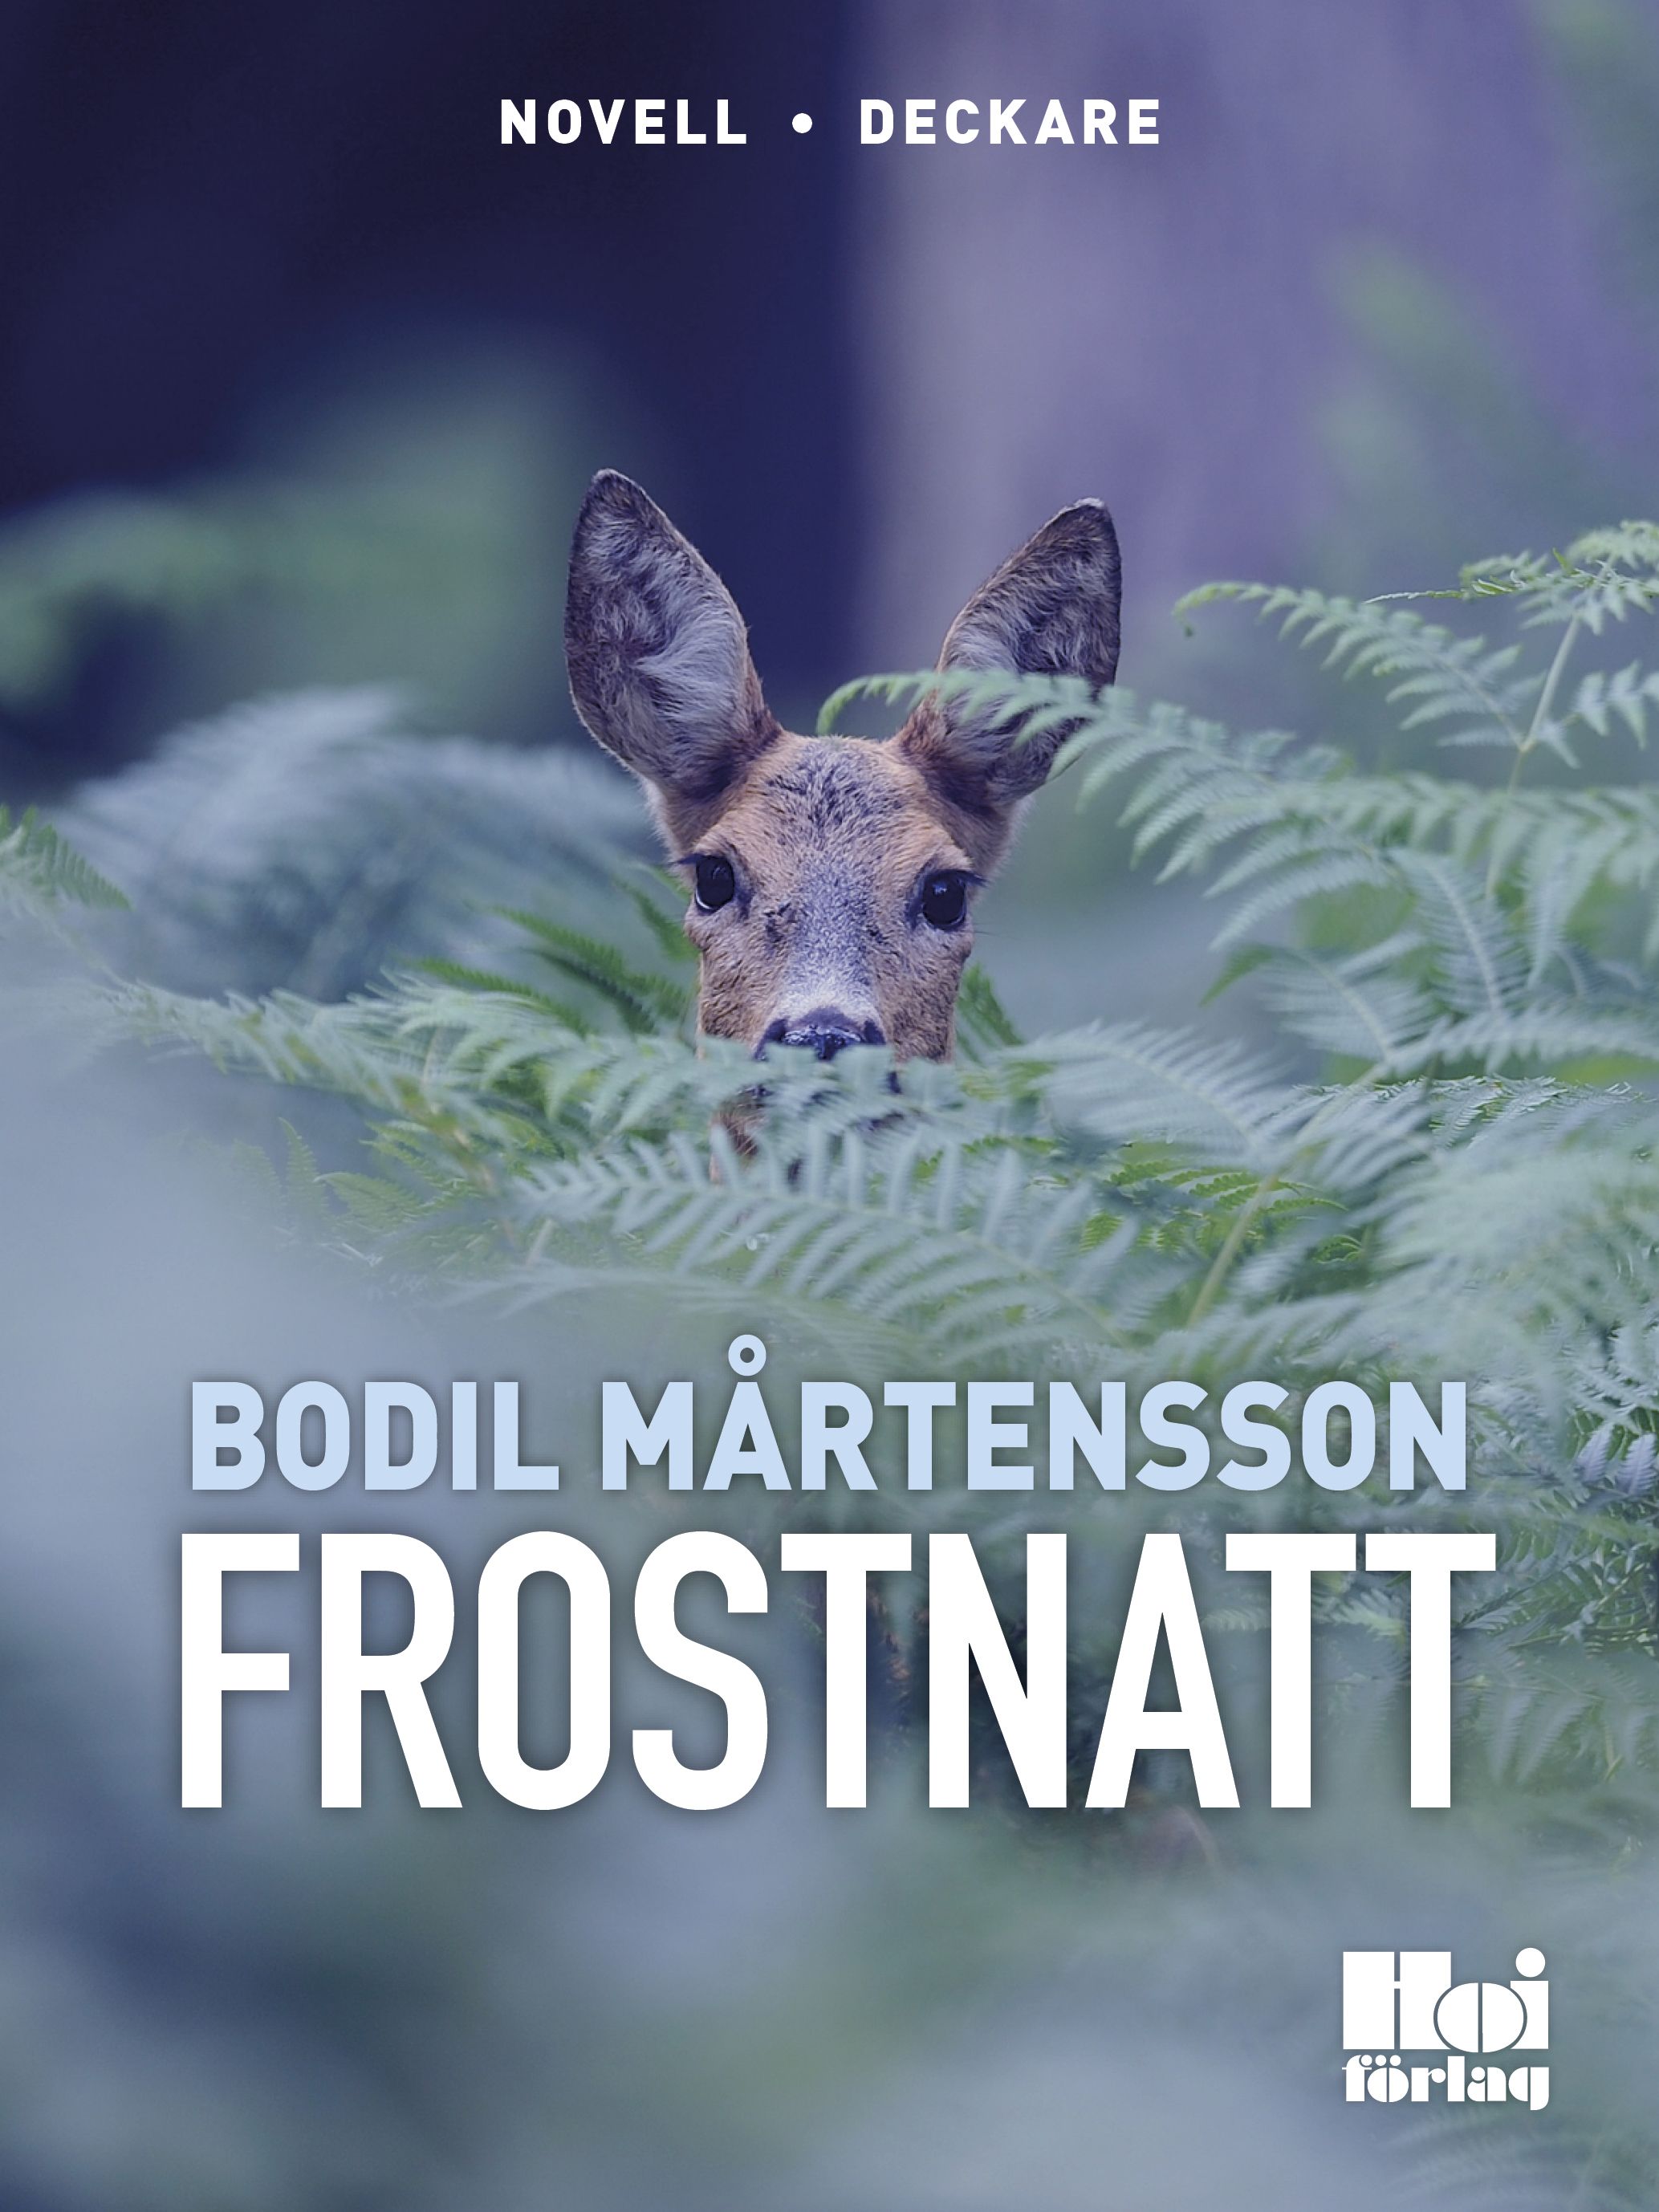 Frostnatt, eBook by Bodil Mårtensson